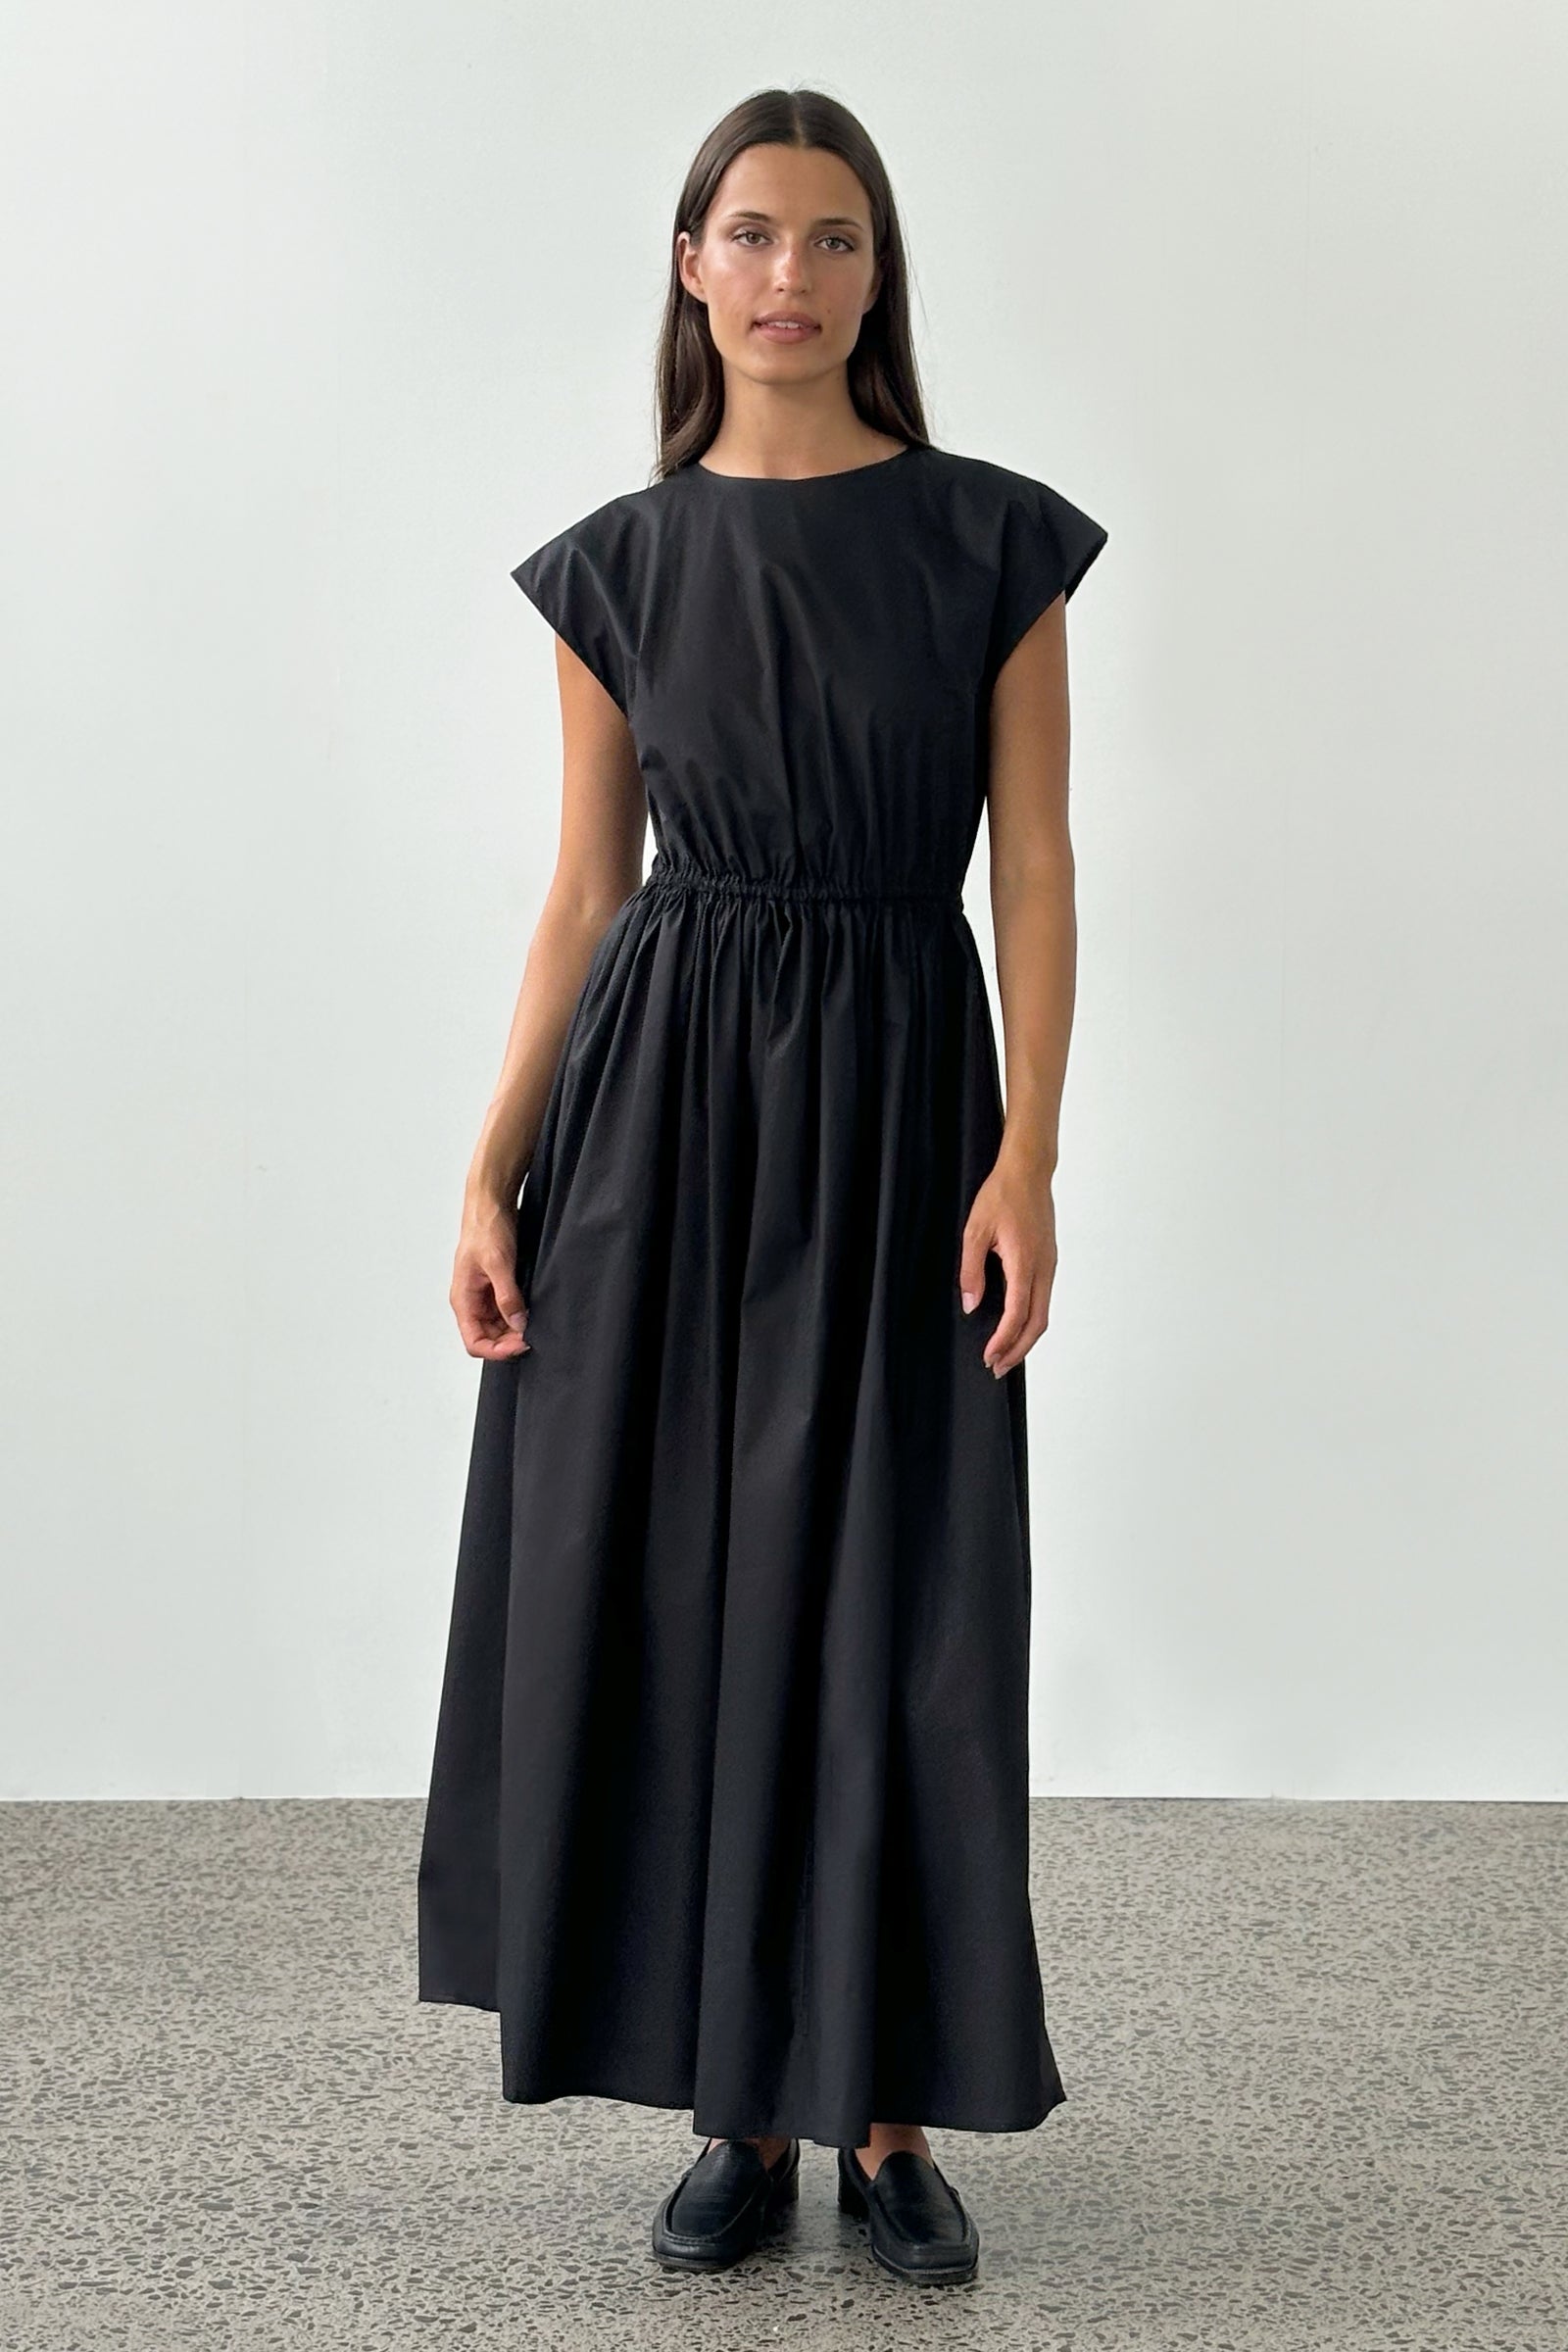 Vienna Original Dress in Black